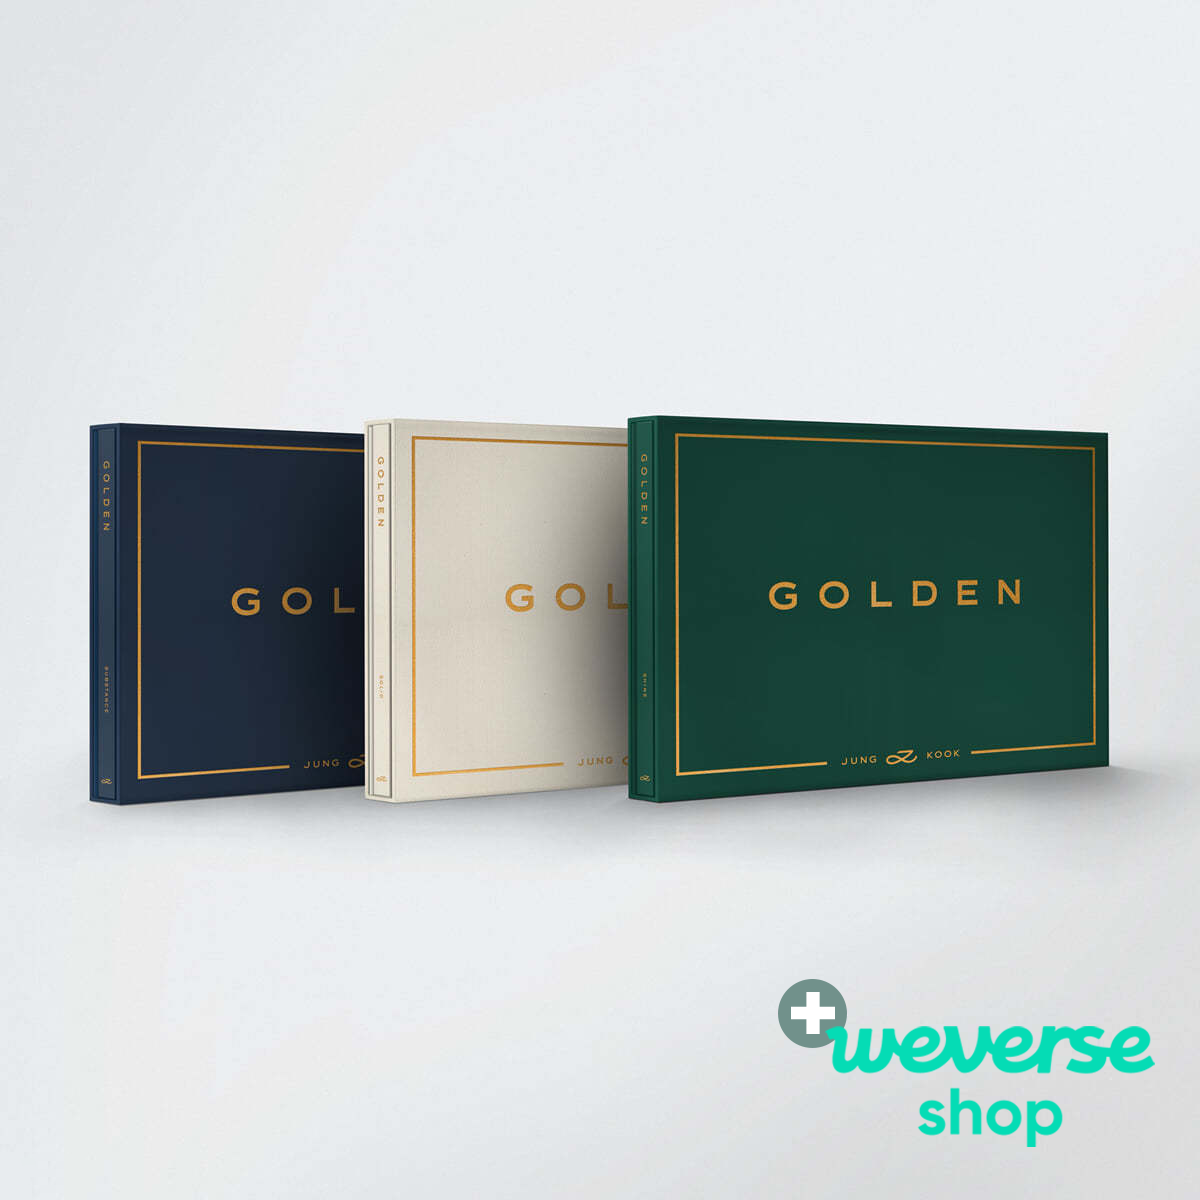 Jung Kook (BTS) - GOLDEN + Weverse Shop P.O.B